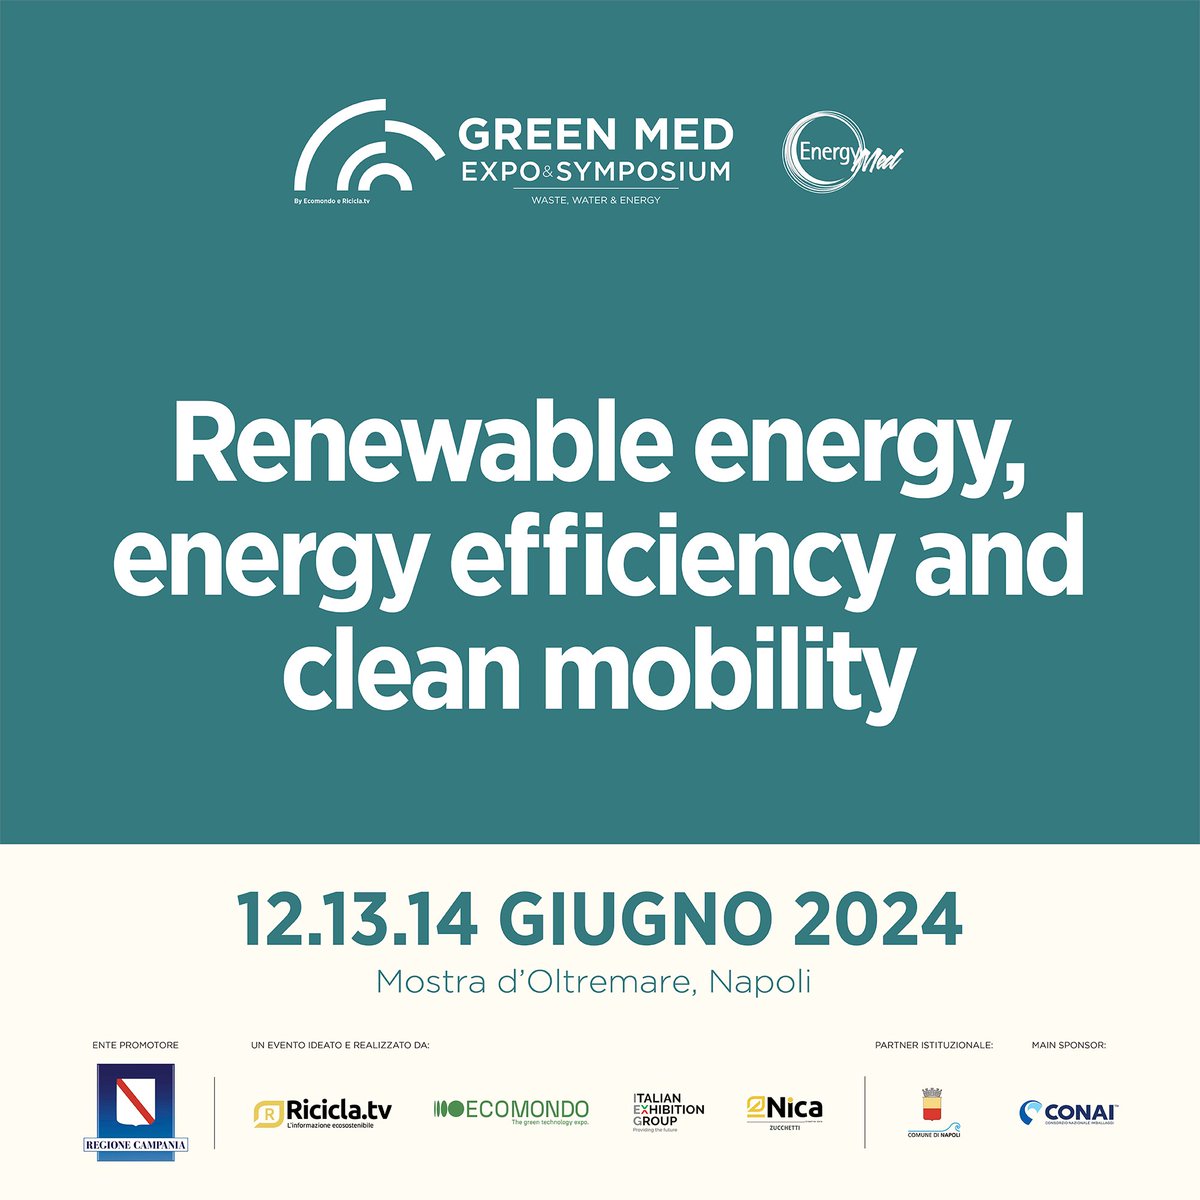 L’Italia è il terzo produttore di #energierinnovabili in Europa mentre il sud dell’Italia è la principale fonte di #energiaeolica contribuendo a traguardare gli ambiziosi obiettivi di #decarbonizzazione fissati dall’Europa.
Incontra le aziende al Green Med Expo & Symposium